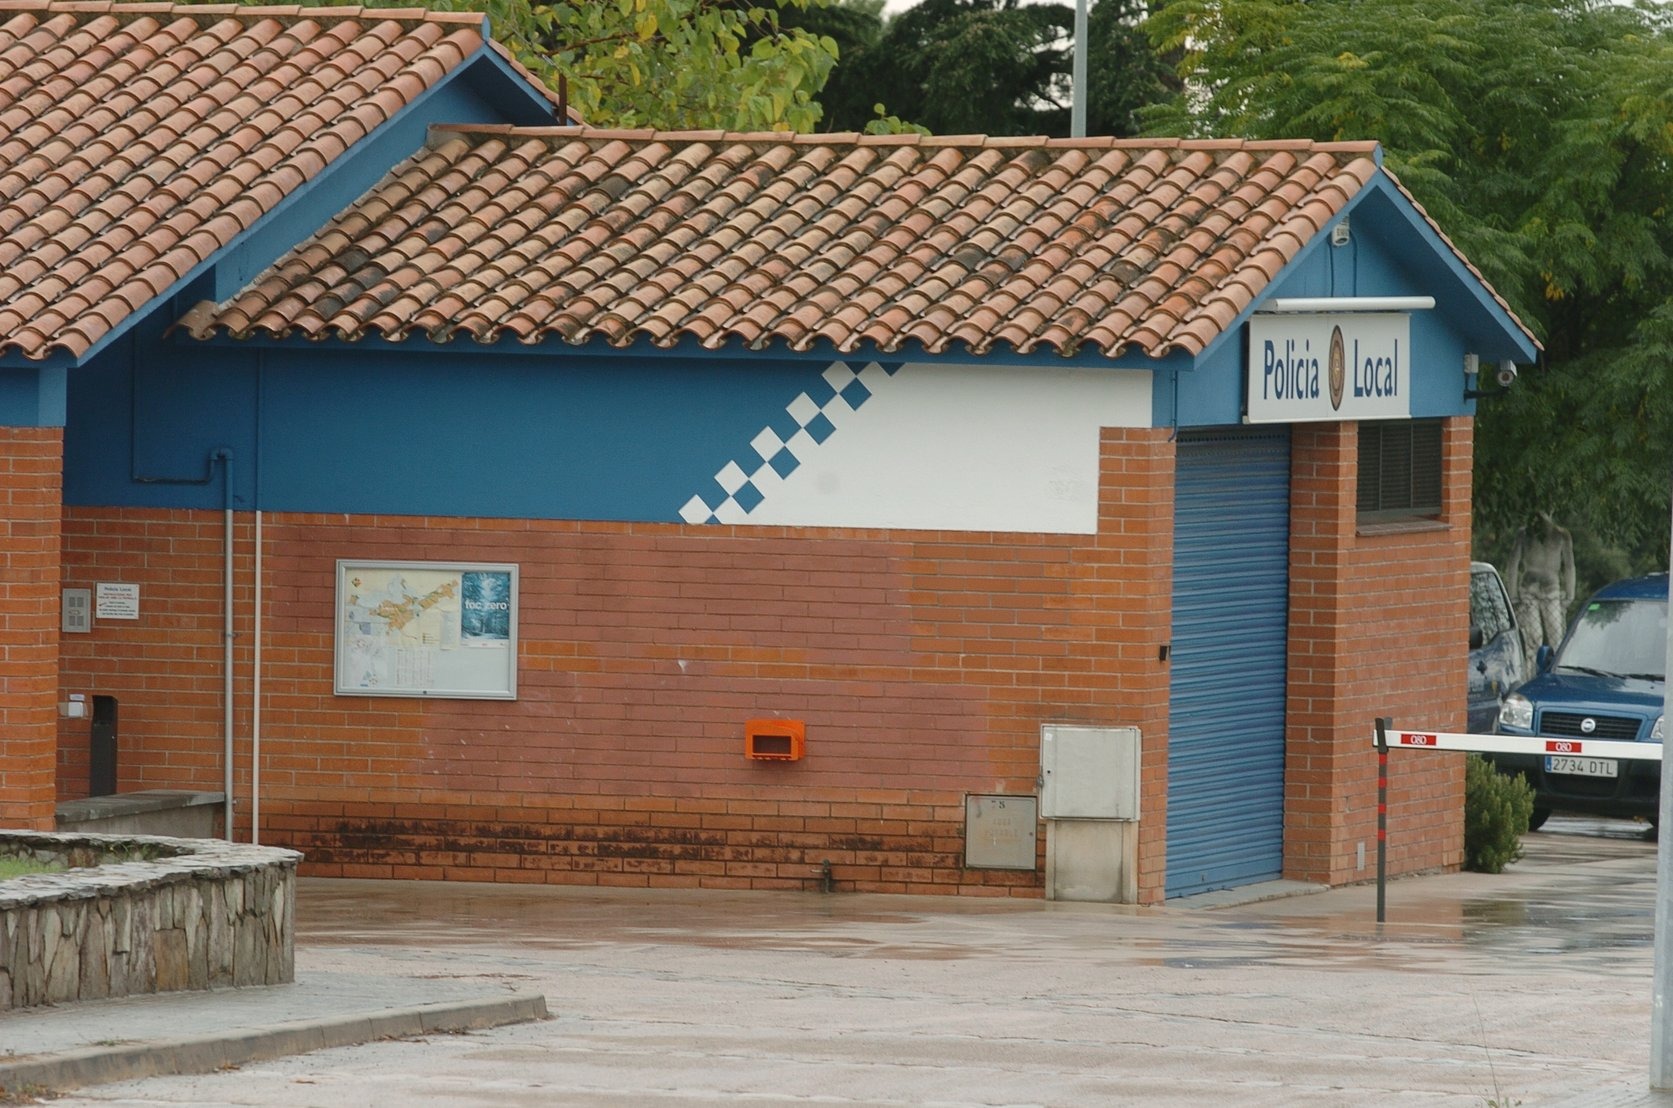 La comissaria de la Policia Local de l'Ametlla, a l'entrada del poble, en una imatge d'arxiu